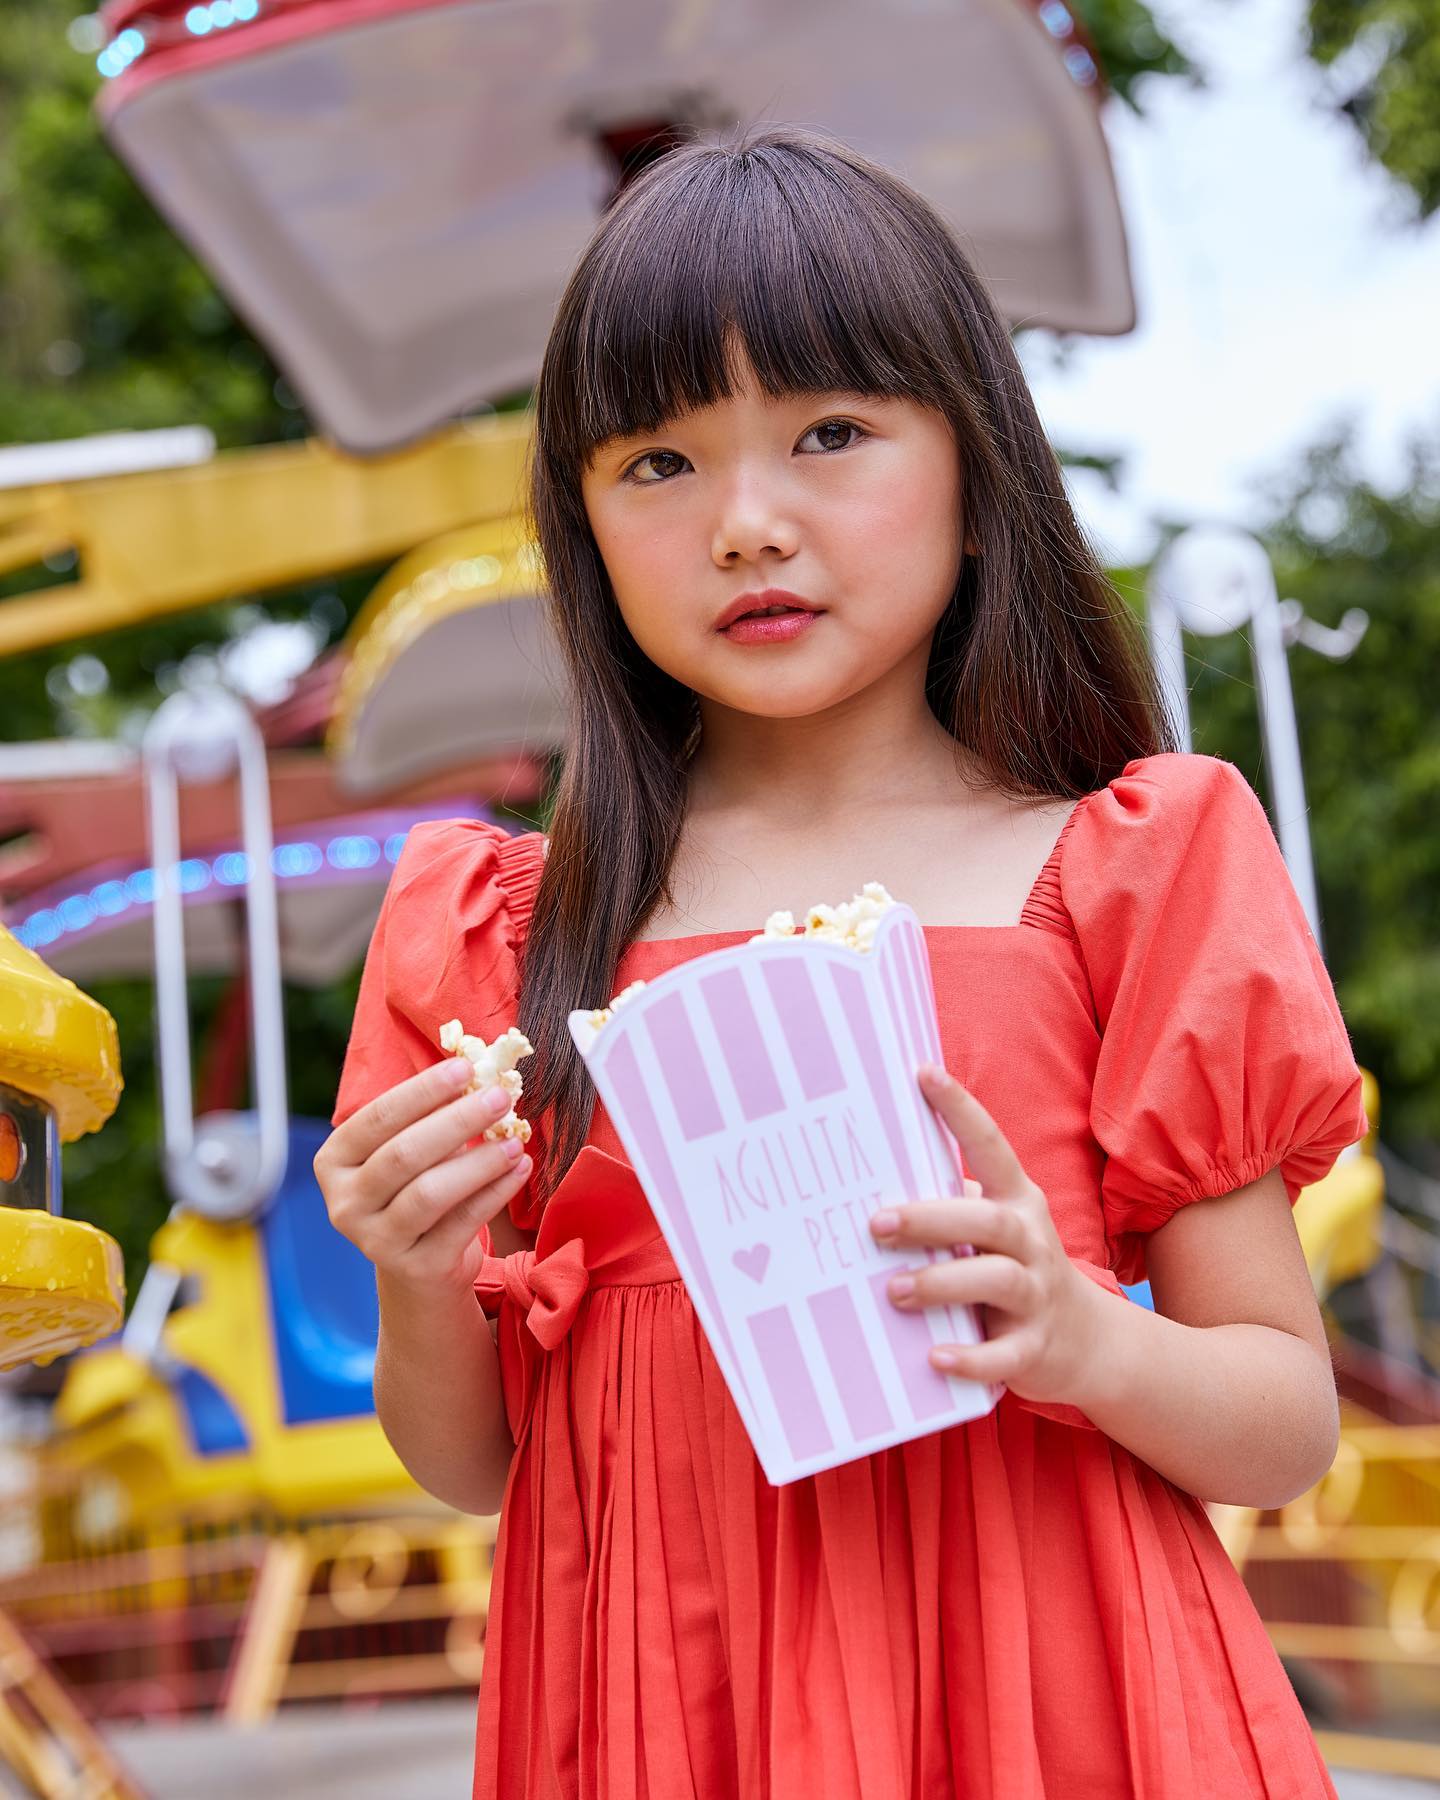 criança comendo pipoca com um vestido rosa bufante